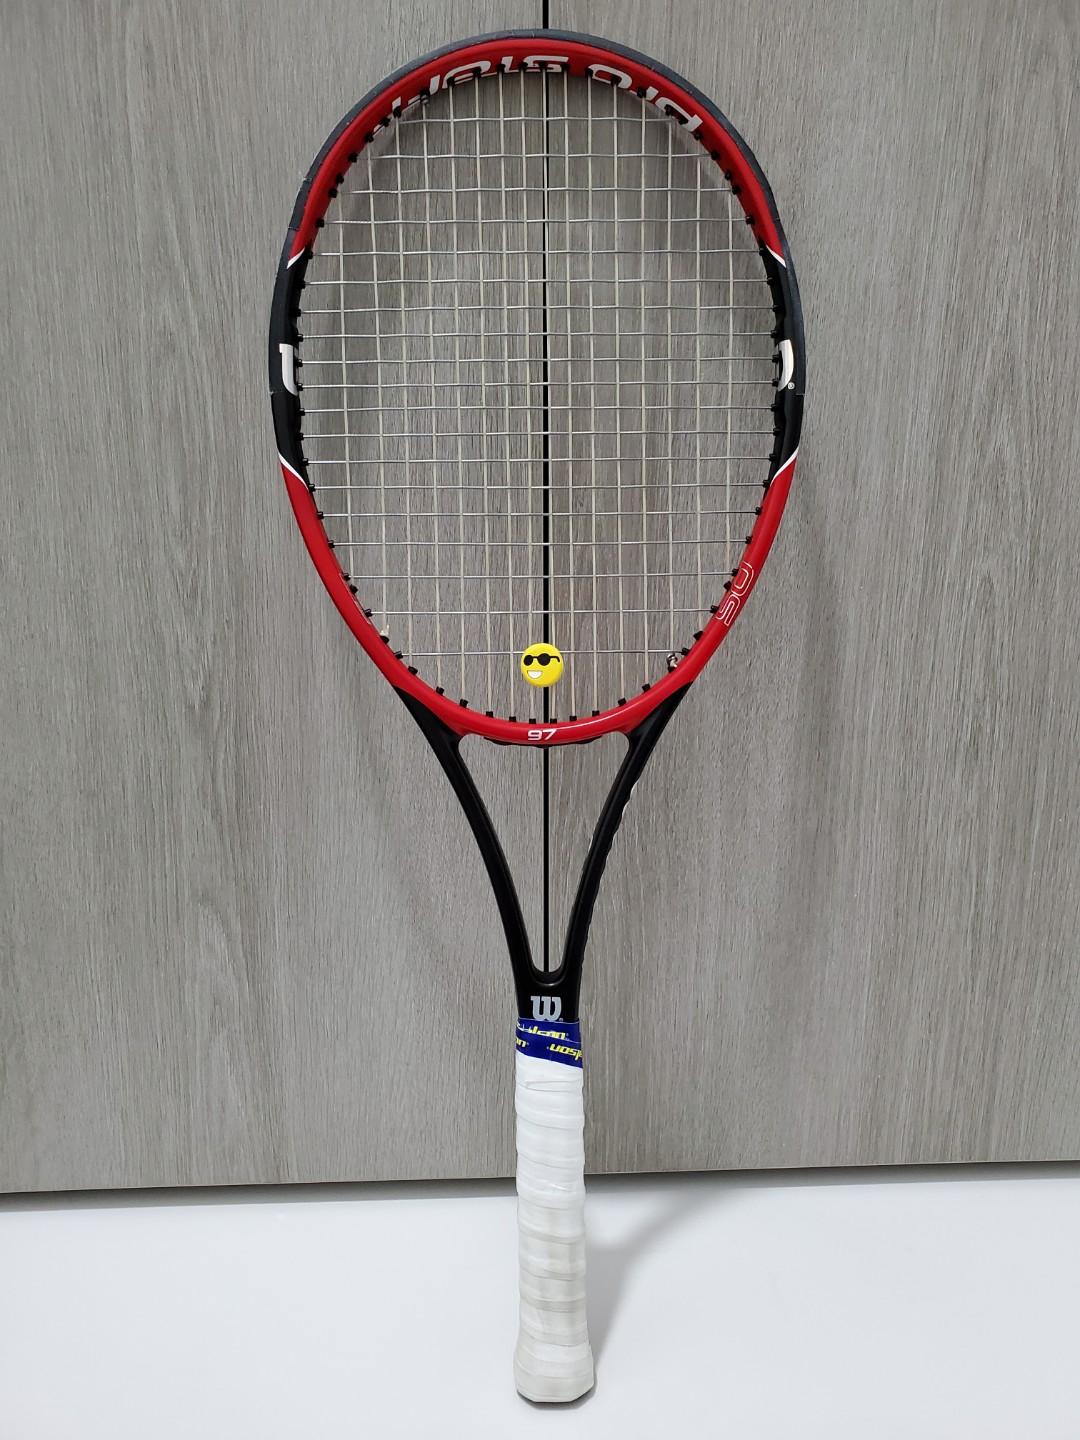 Wilson 2014 Pro staff 97 head 4 3/8 grip Tennis Racquet 